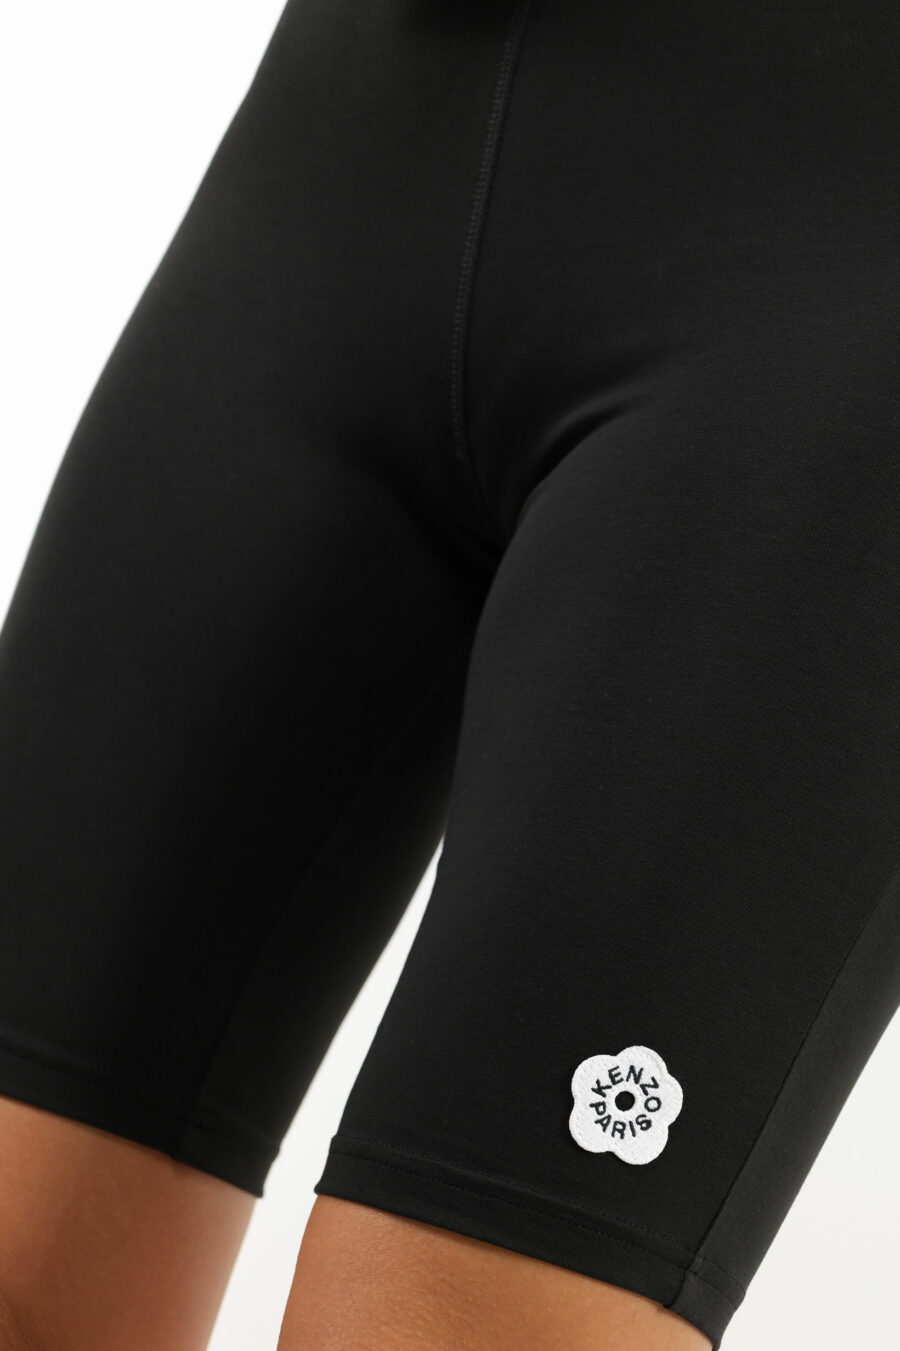 Pantalón corto de ciclismo negro con minilogo "boke flower" blanco - 109630